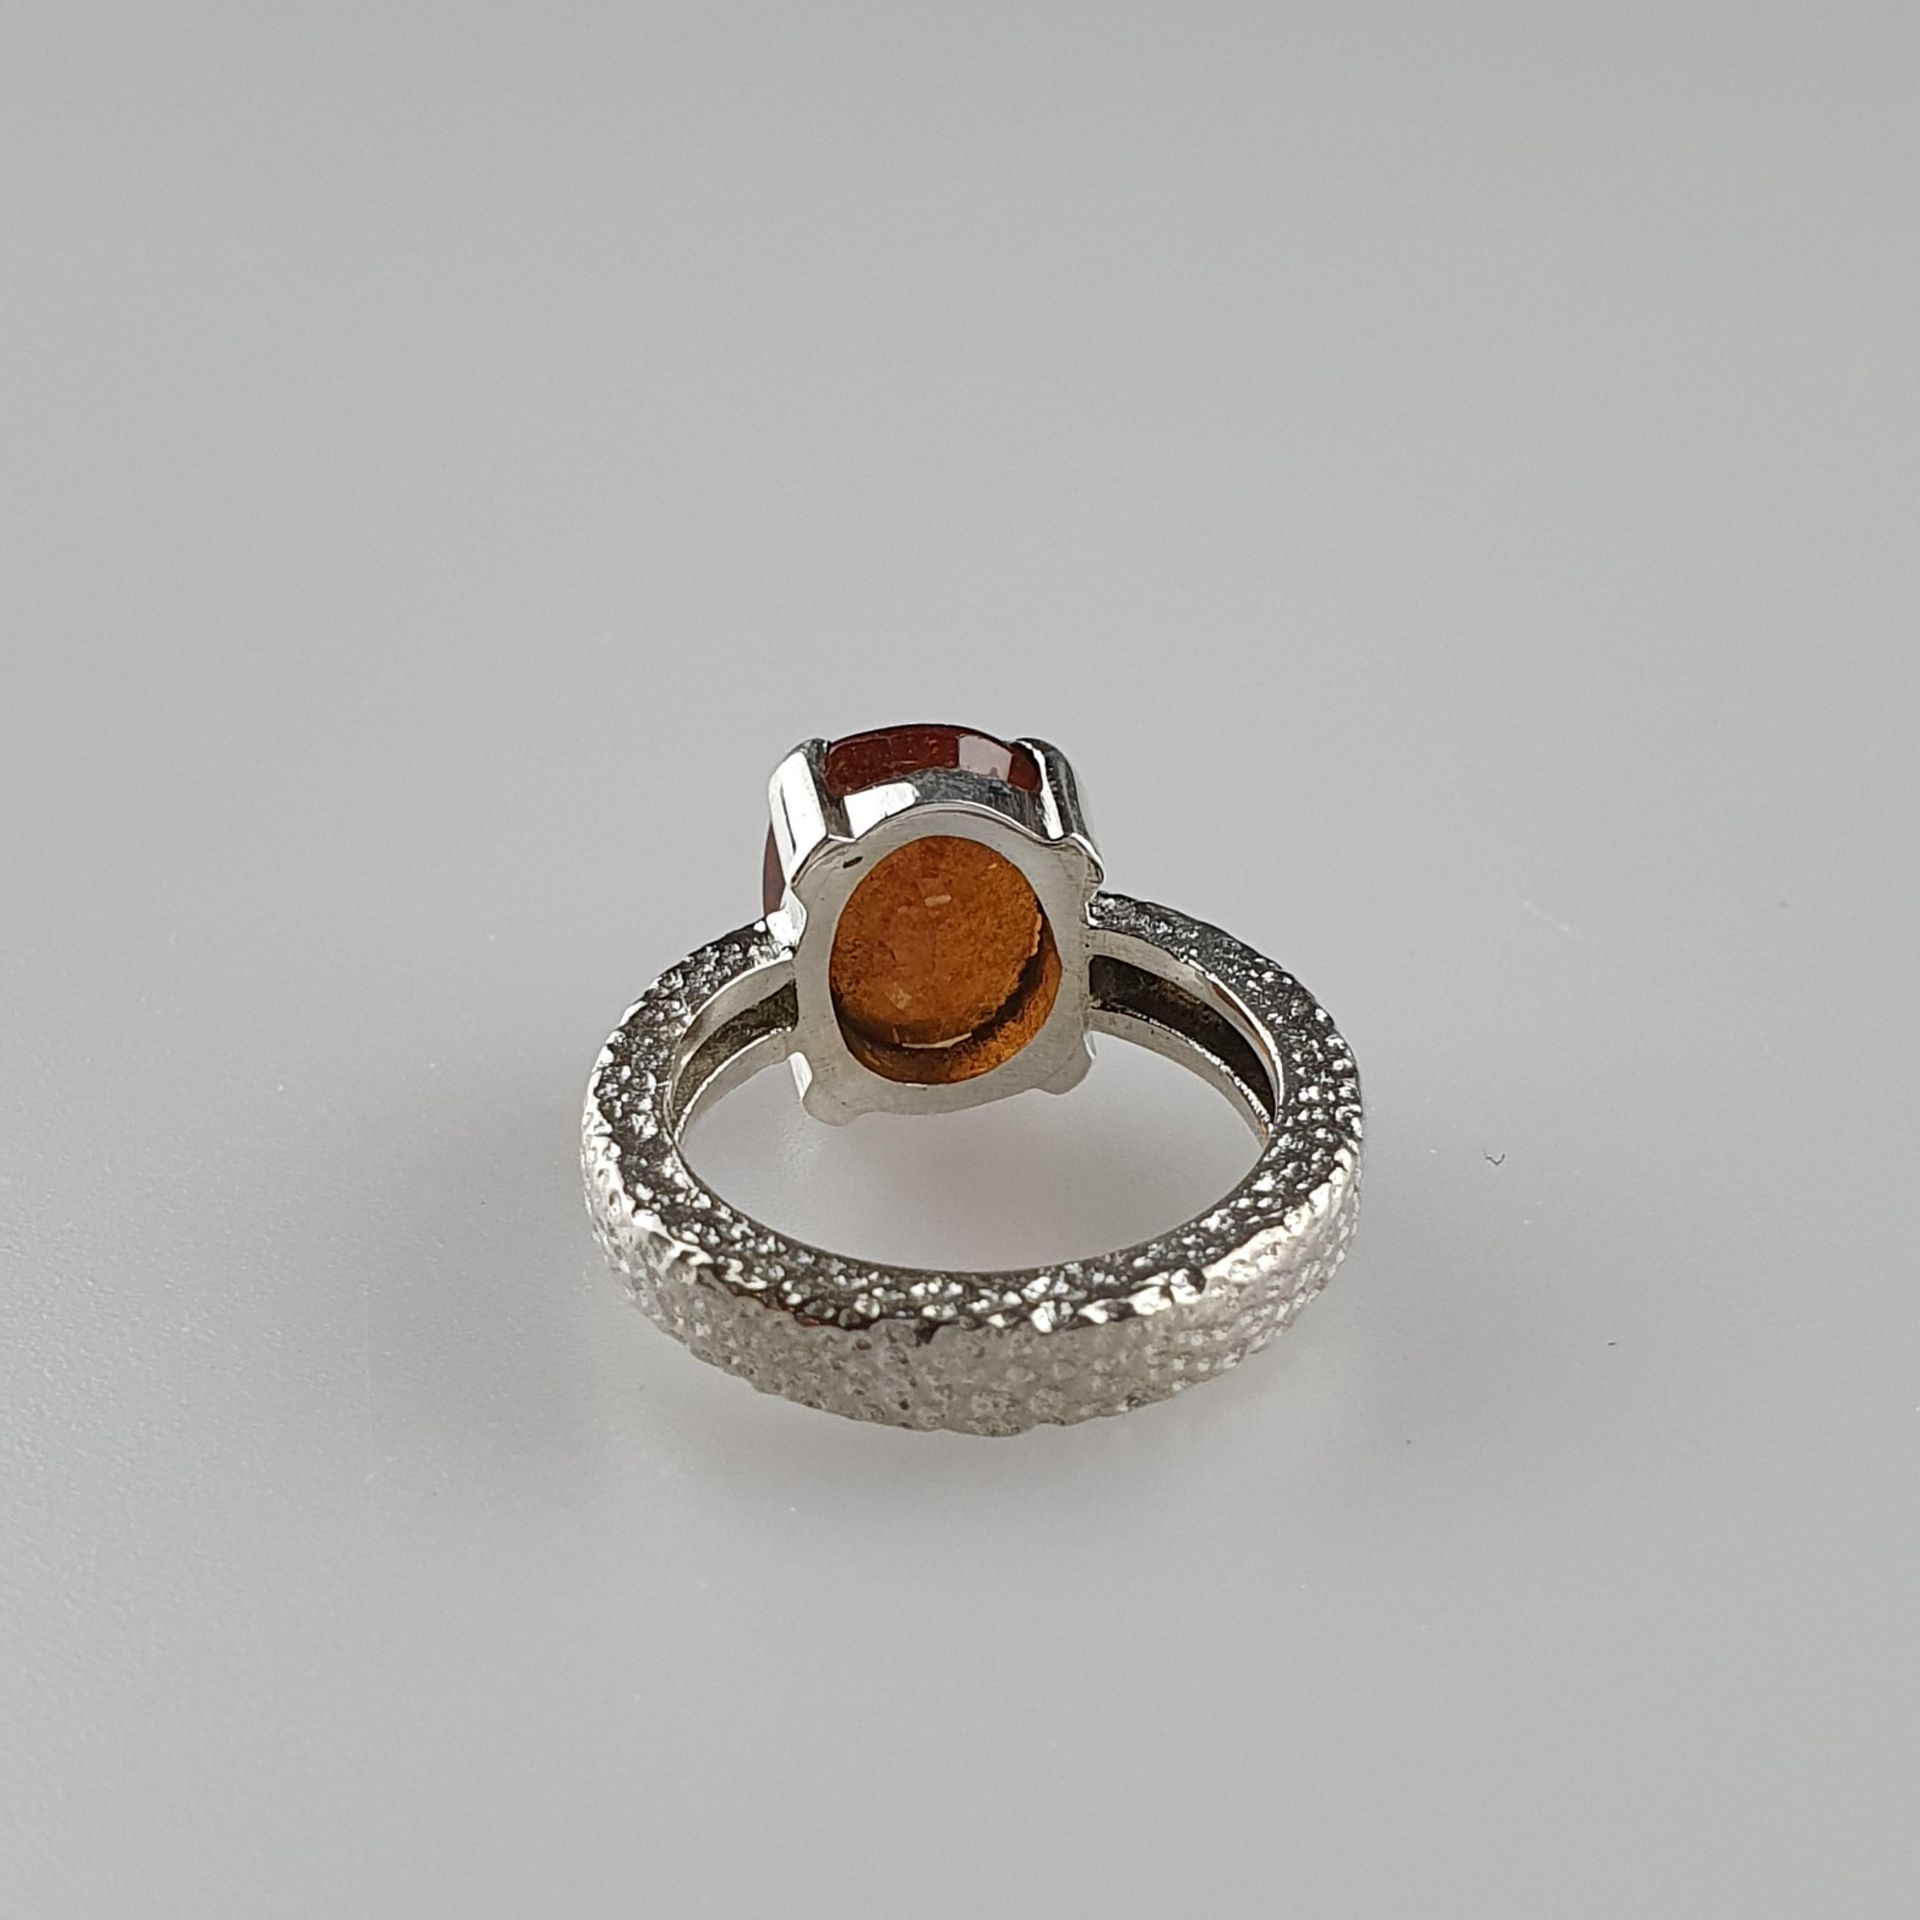 Hessonit (Granat) Ring - 925er Silber, Ringkopf besetzt mit oval facettiertem H - Bild 3 aus 5